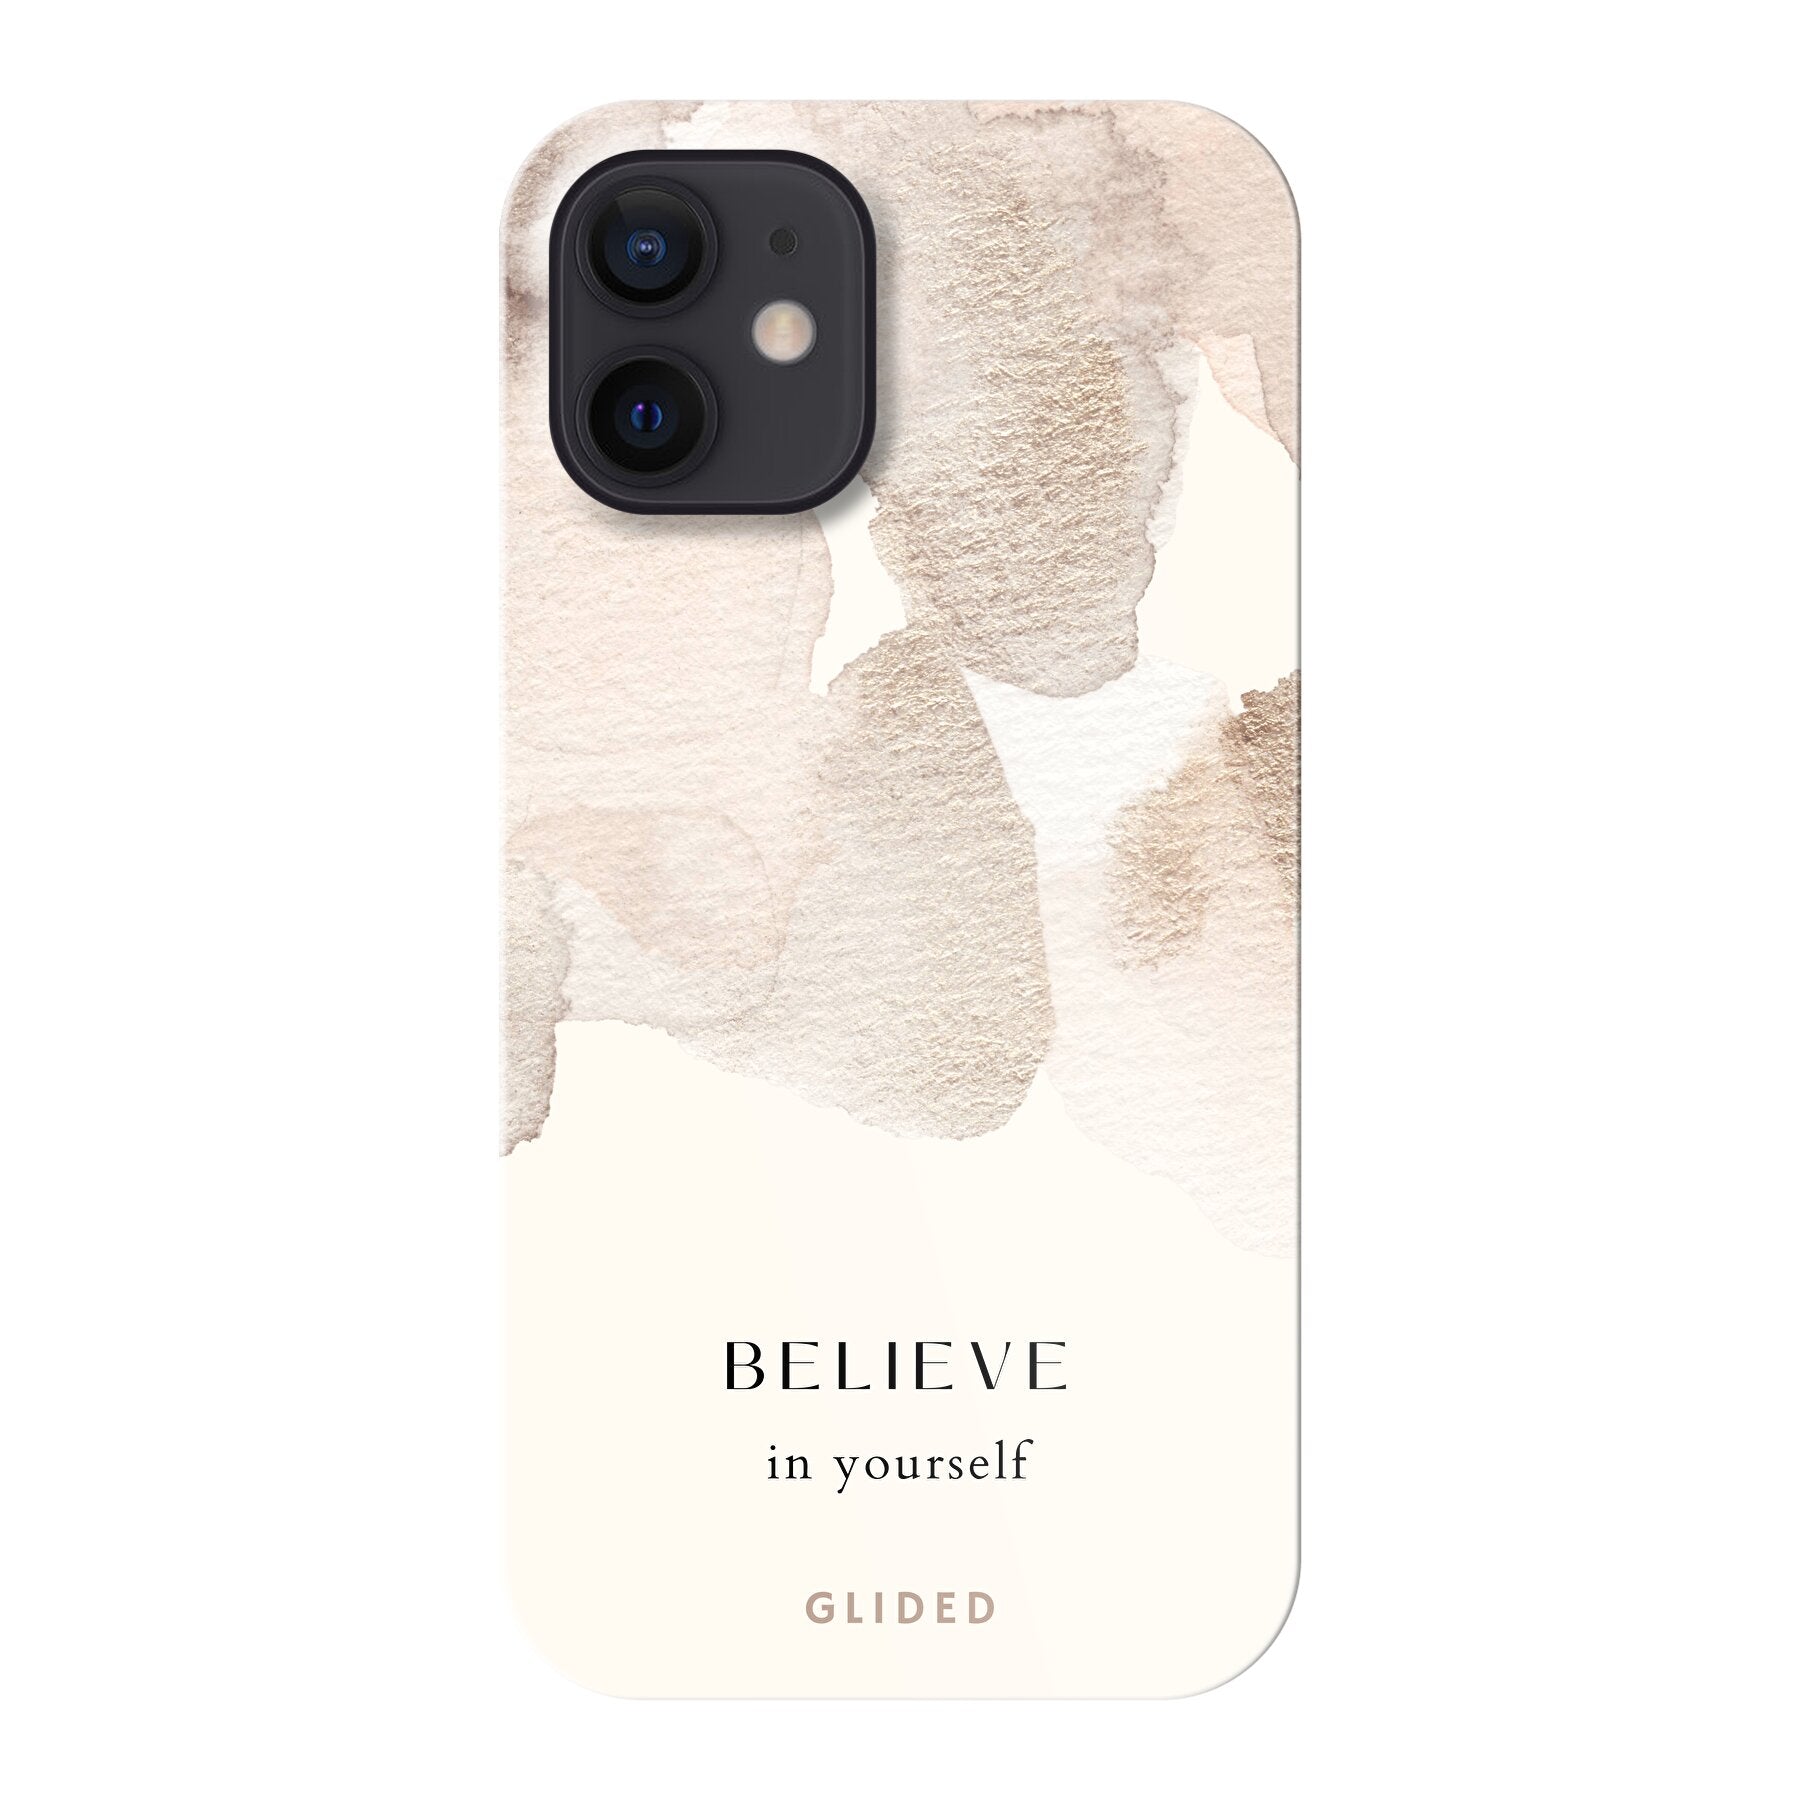 Believe in yourself - iPhone 12 mini Handyhülle Hard Case